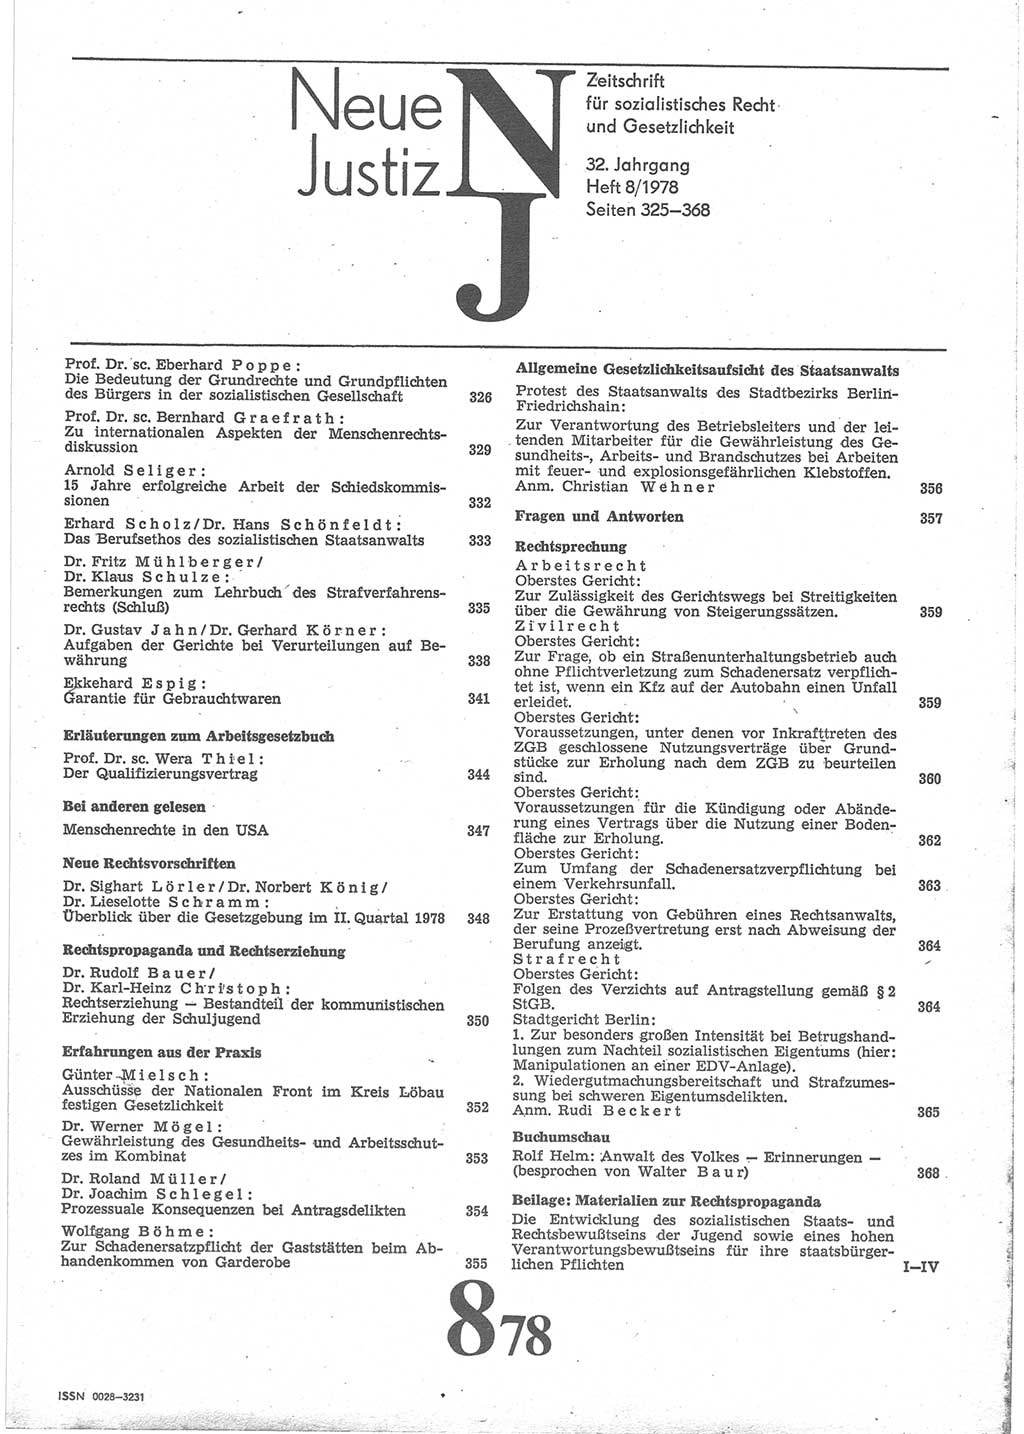 Neue Justiz (NJ), Zeitschrift für sozialistisches Recht und Gesetzlichkeit [Deutsche Demokratische Republik (DDR)], 32. Jahrgang 1978, Seite 325 (NJ DDR 1978, S. 325)